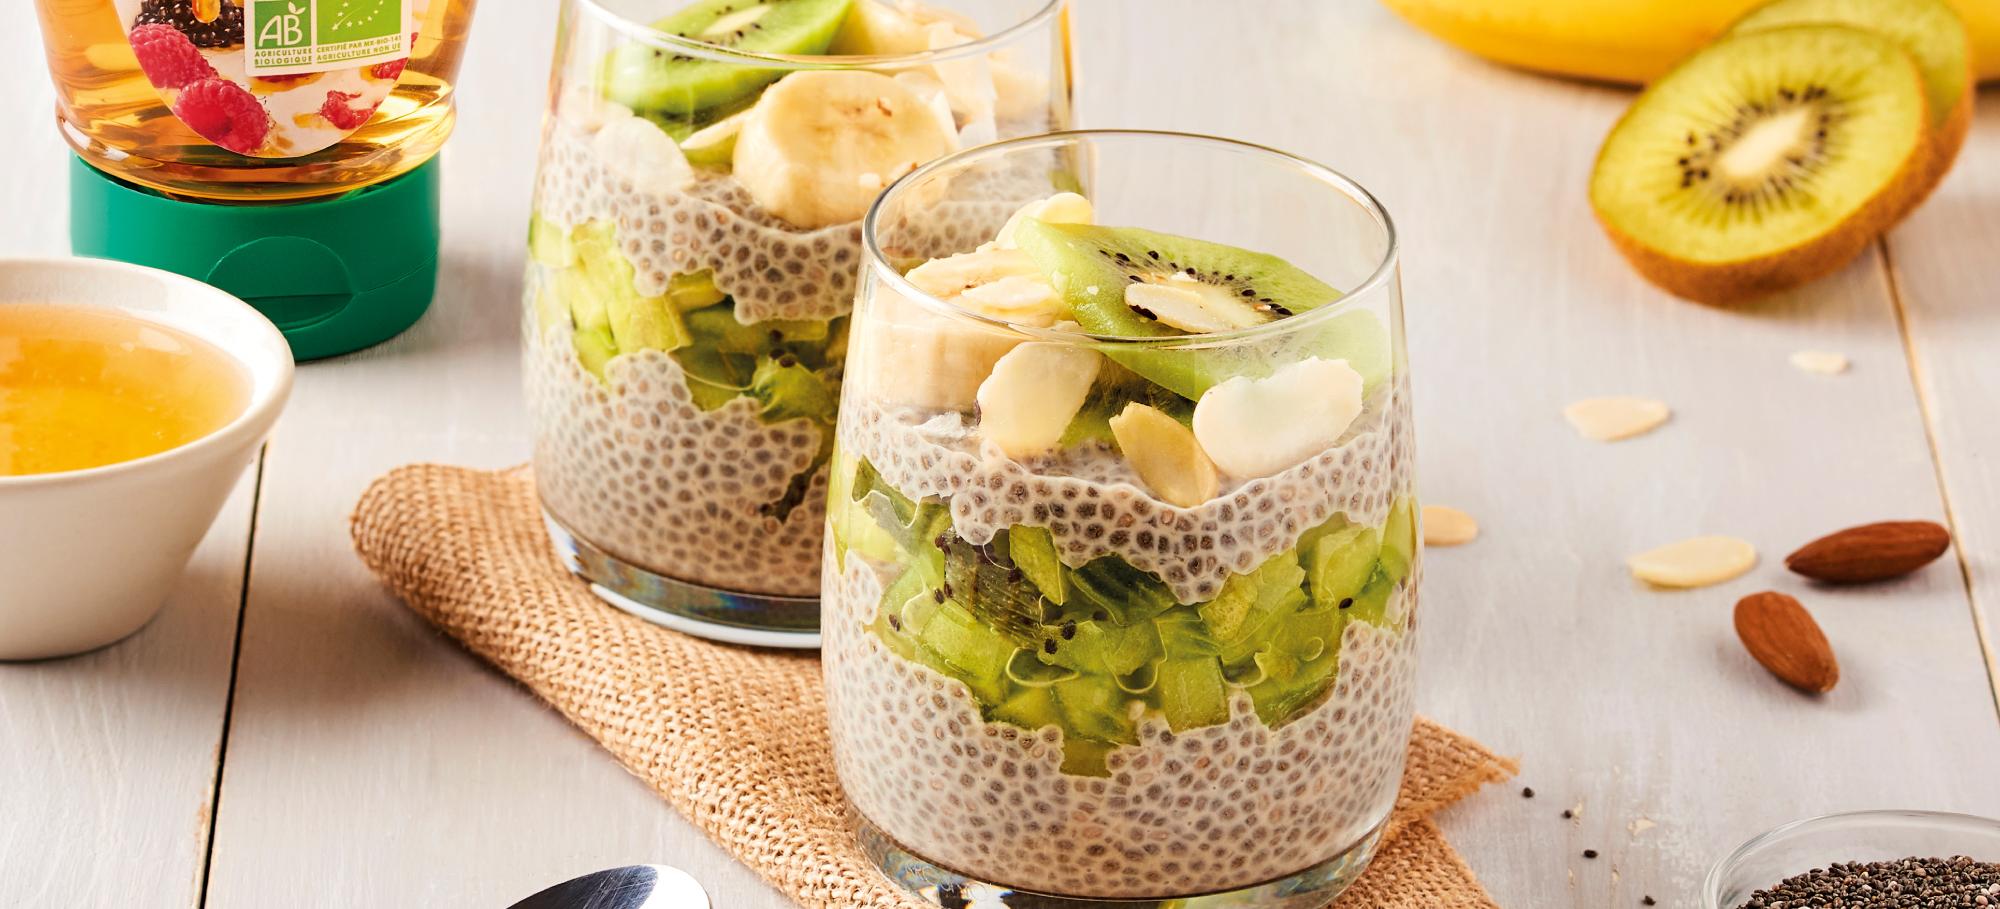 Mes Recettes recette végétarienne dessert gourmand image chia pudding fruits frais banane kiwi diététique healthy 